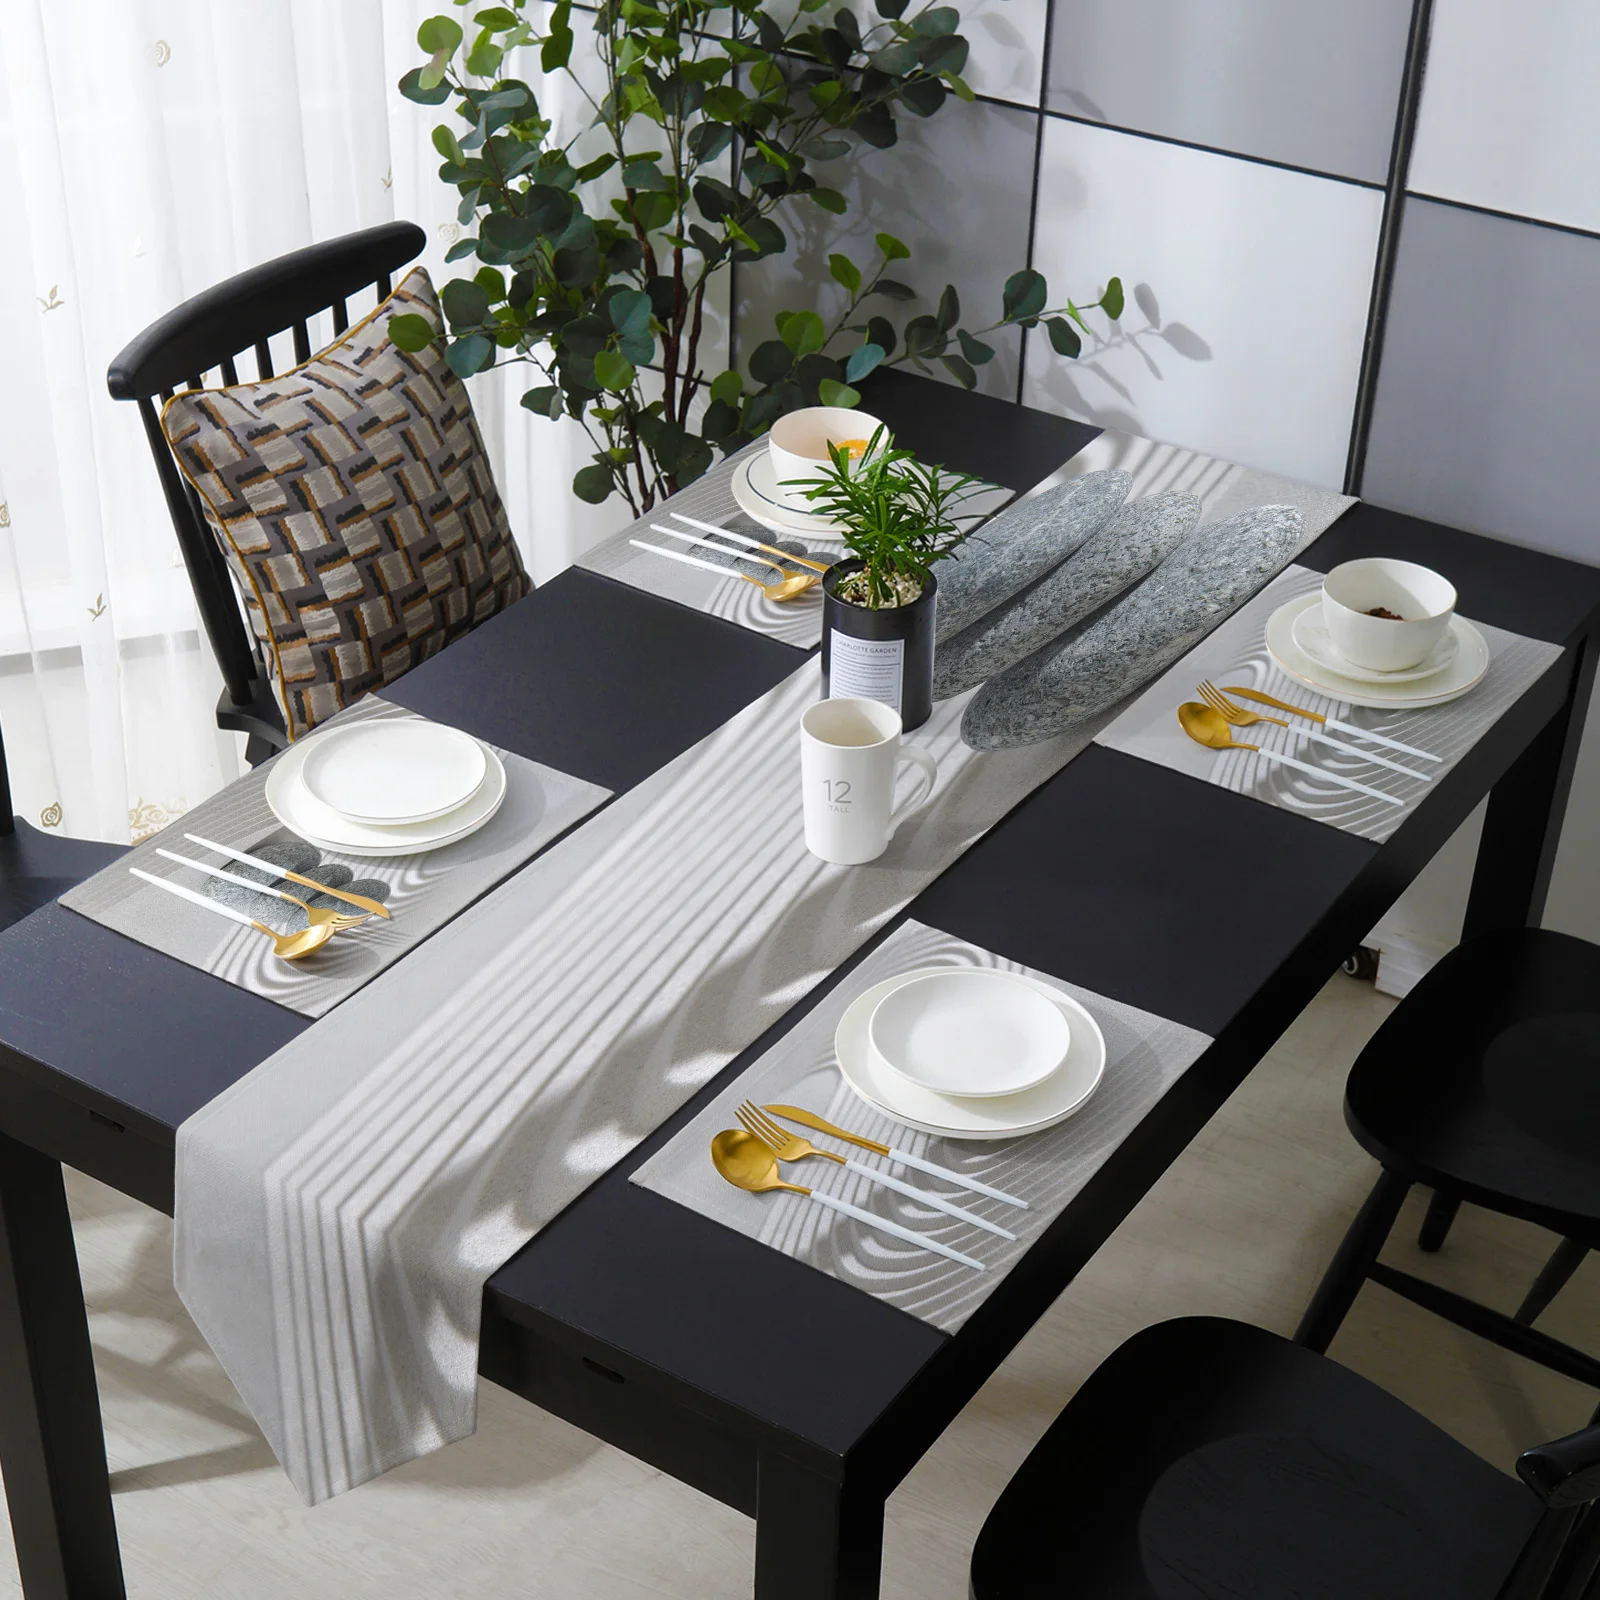 Набор столовых приборов Zen Stone набор для дома кухни обеденного стола украшения